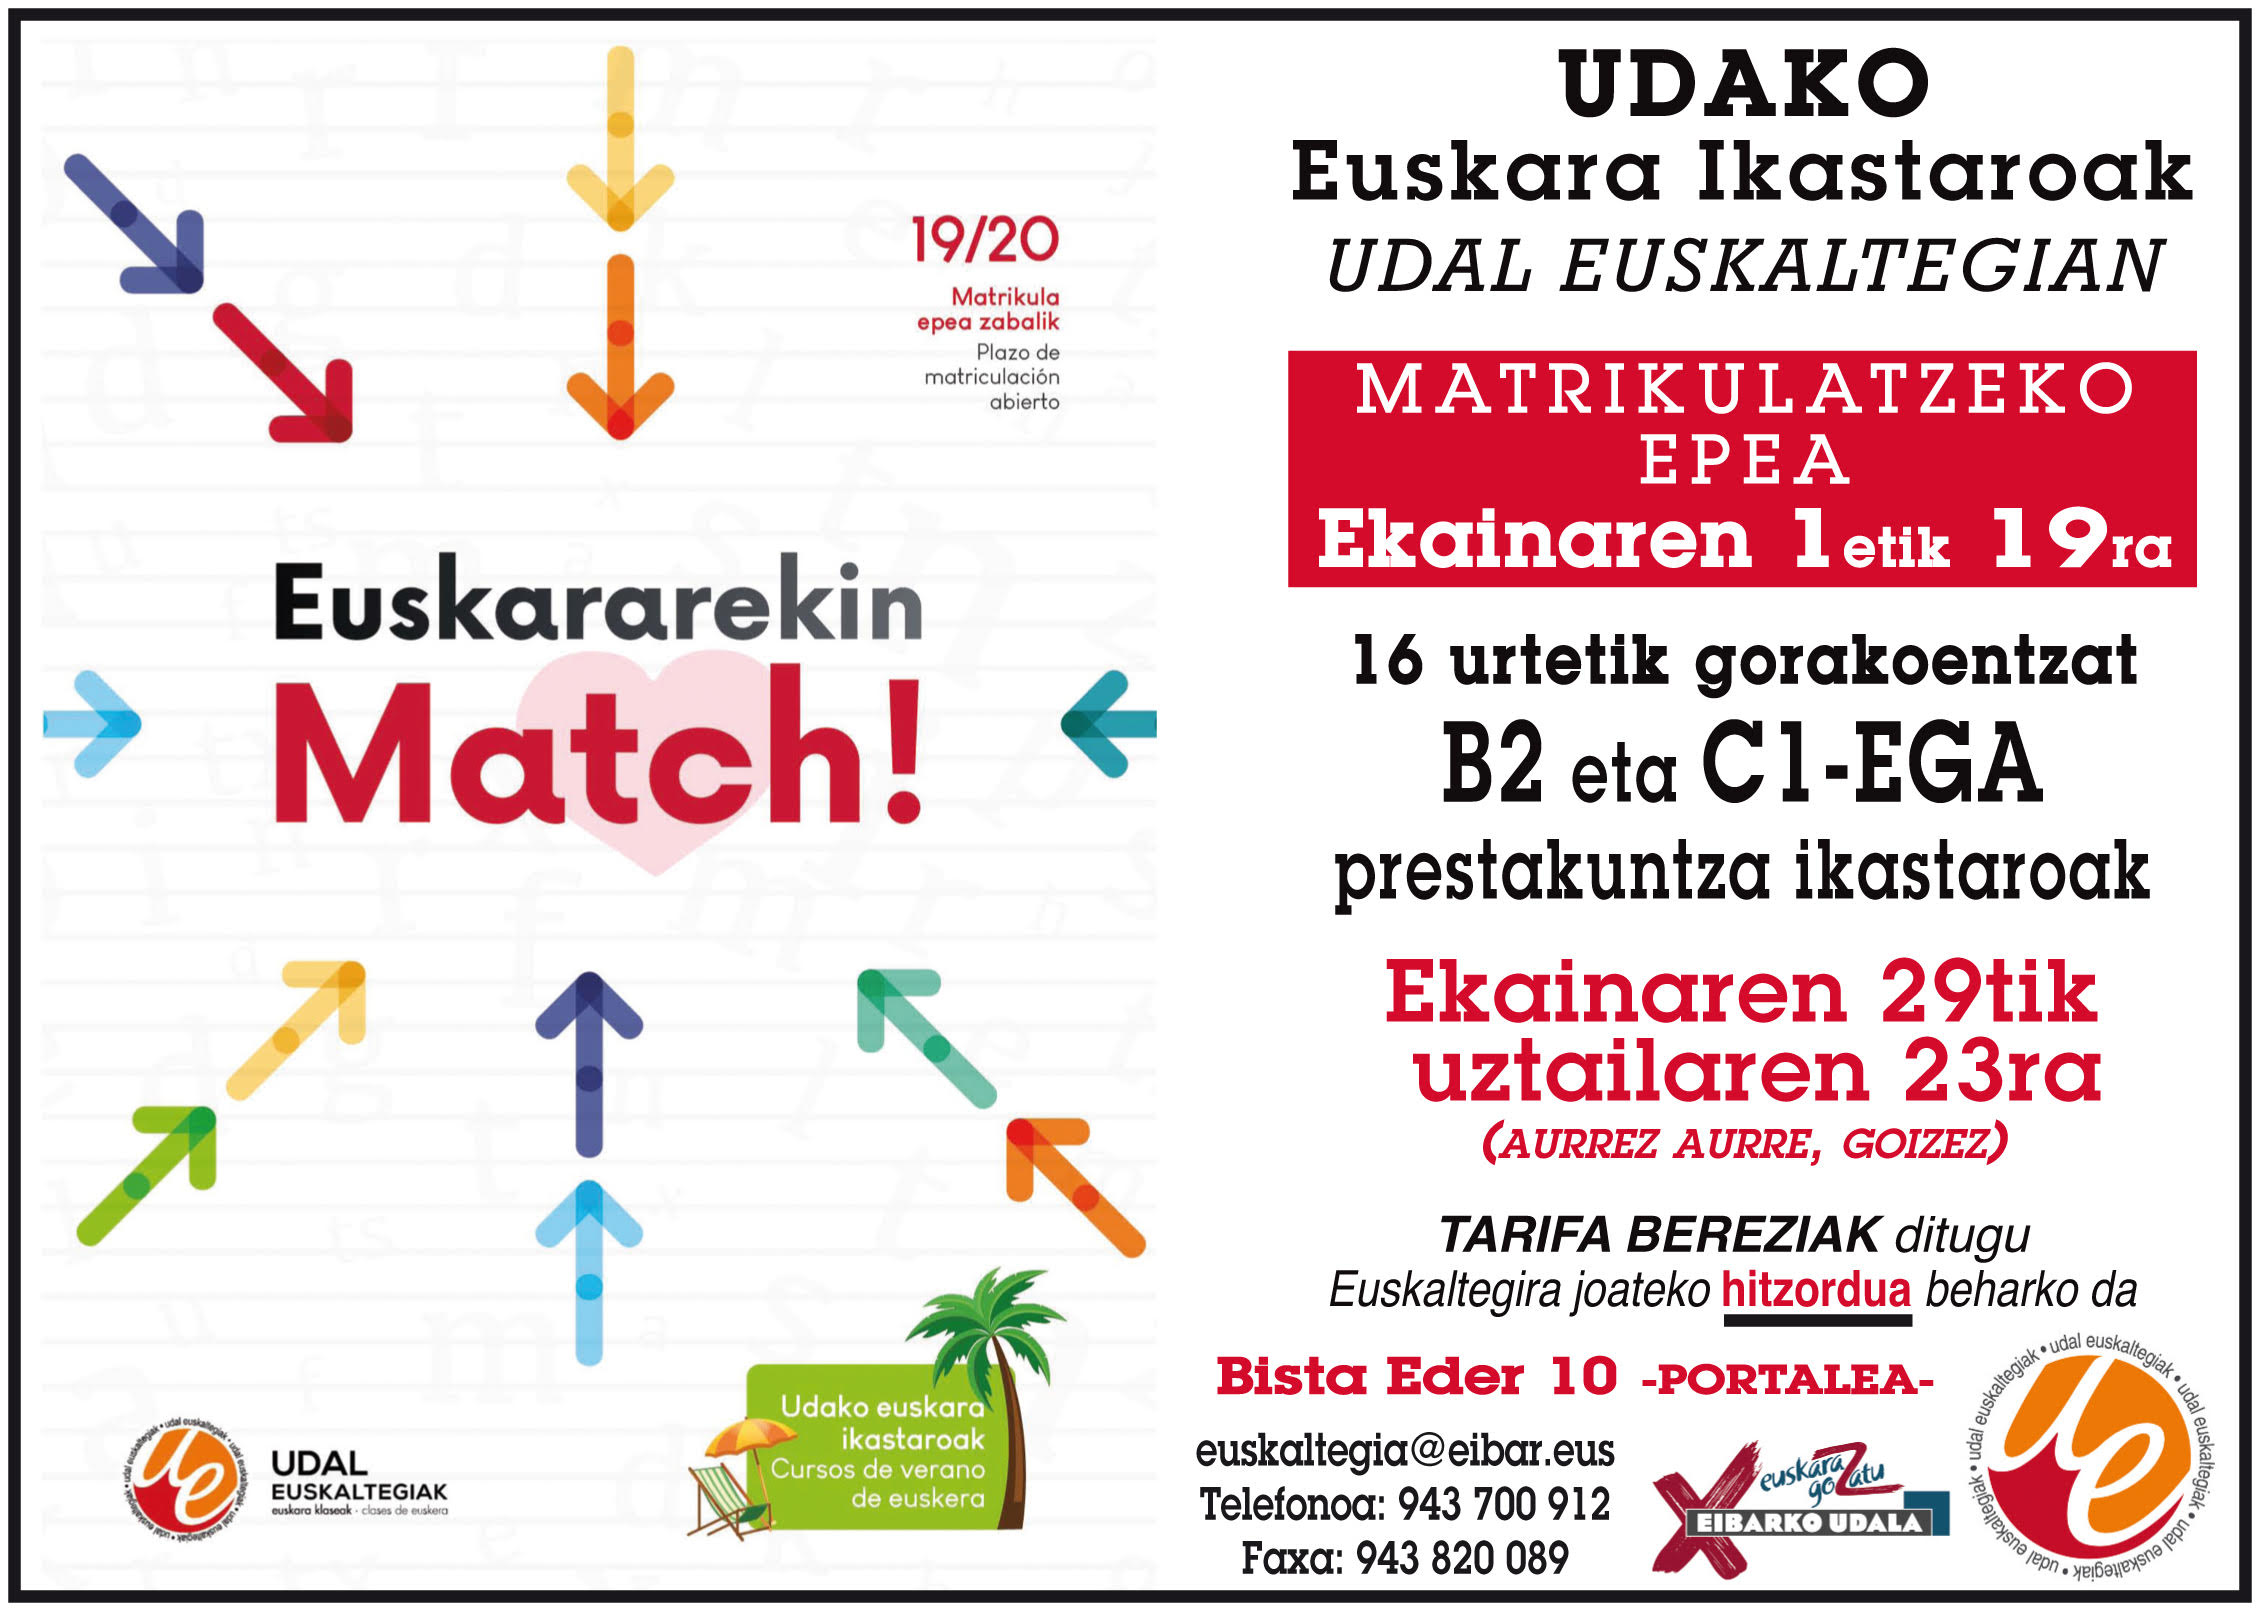 El plazo de matrícula para realizar el curso de verano en el Euskaltegi Municipal estará abierto del 1 al 19 de junio